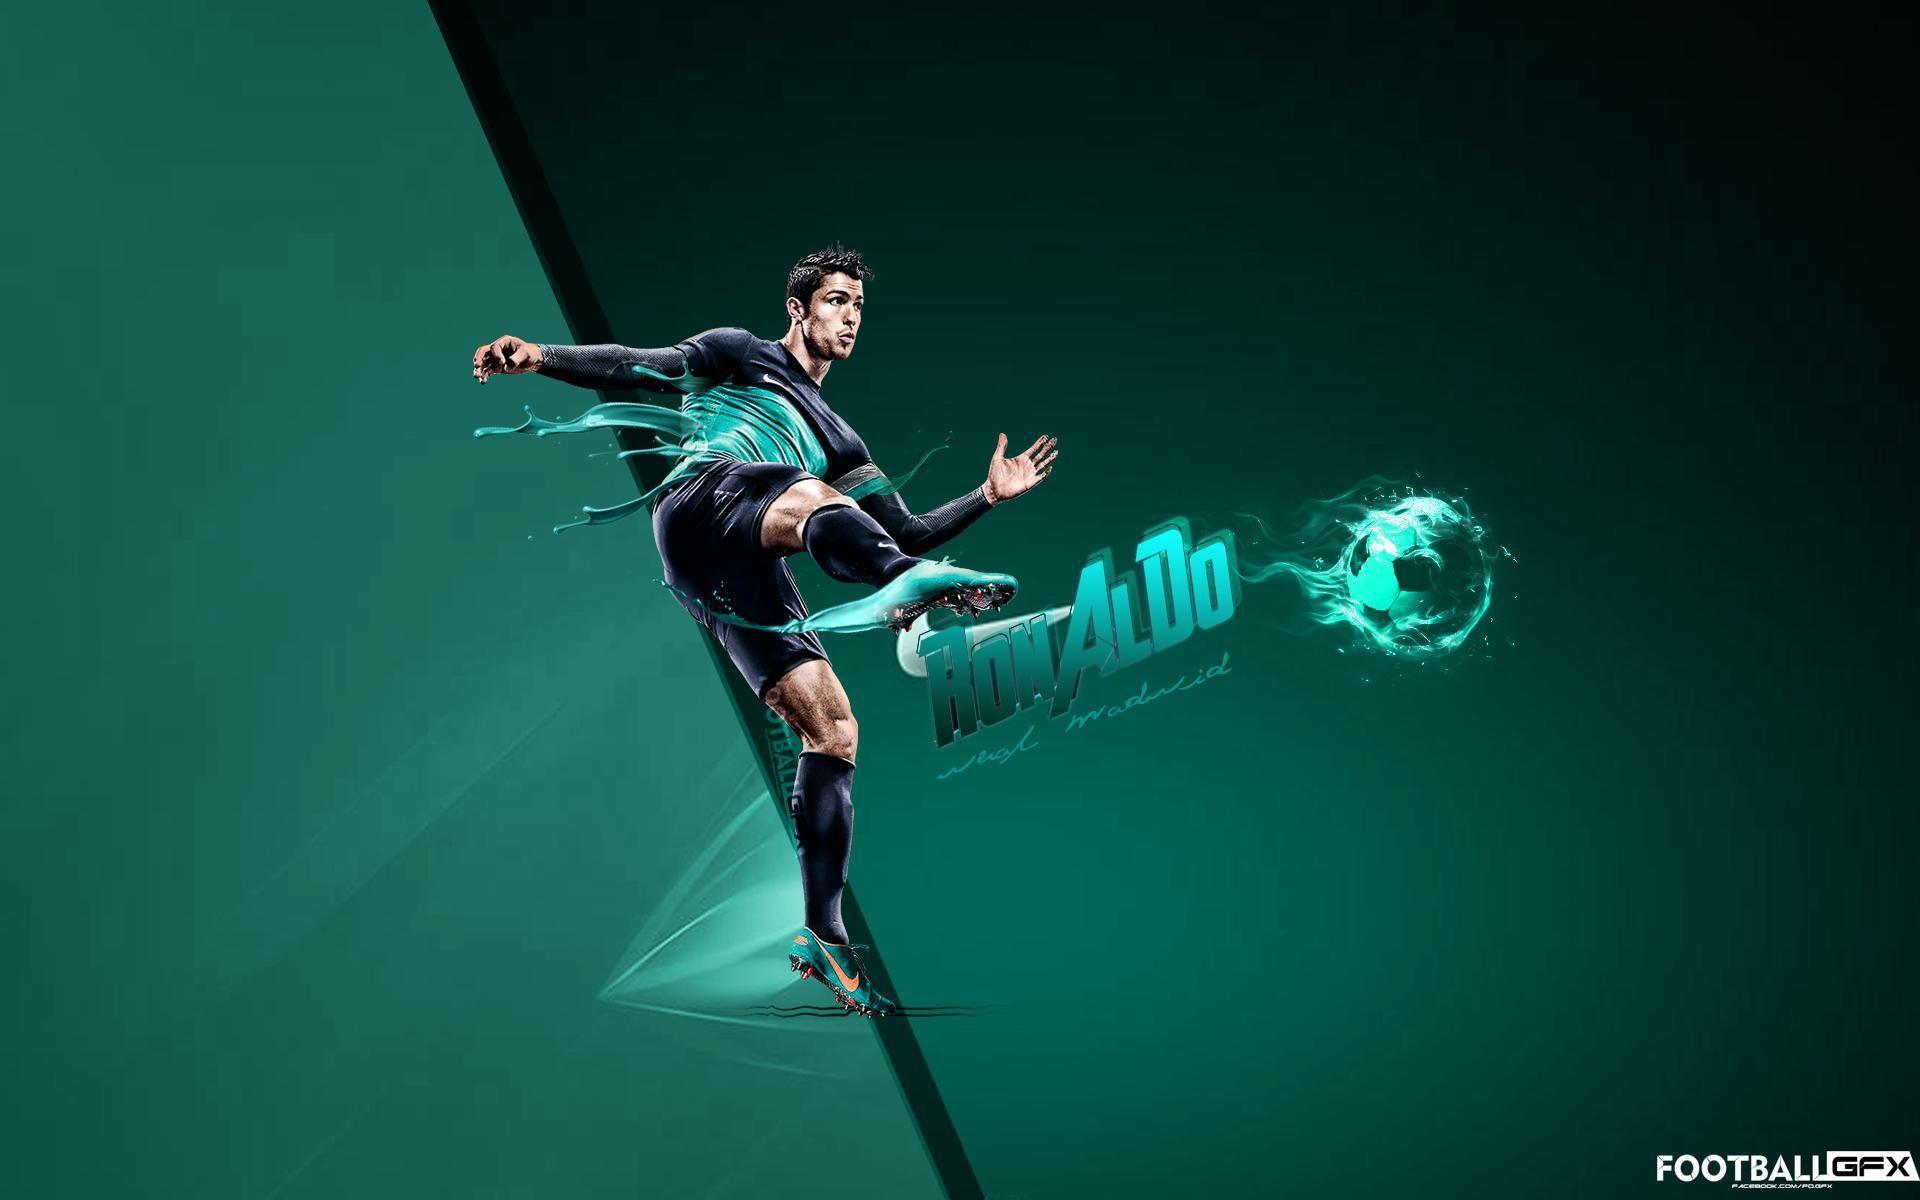 Download Cristiano Ronaldo Cool Nike CR7 Wallpaper